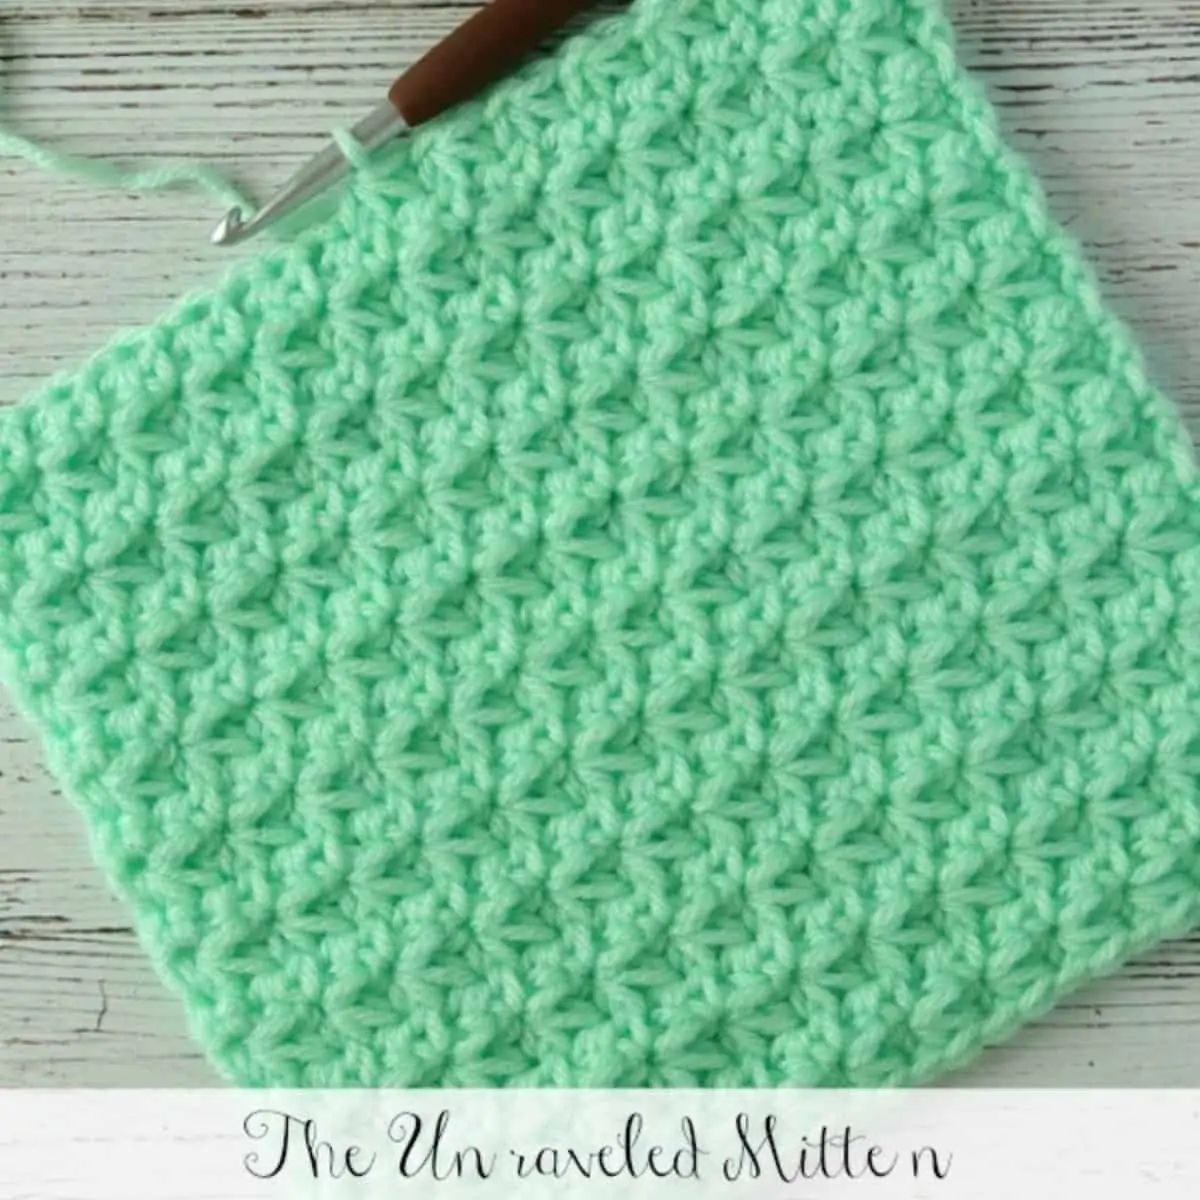 mint green trinity stitch dishcloth in progress